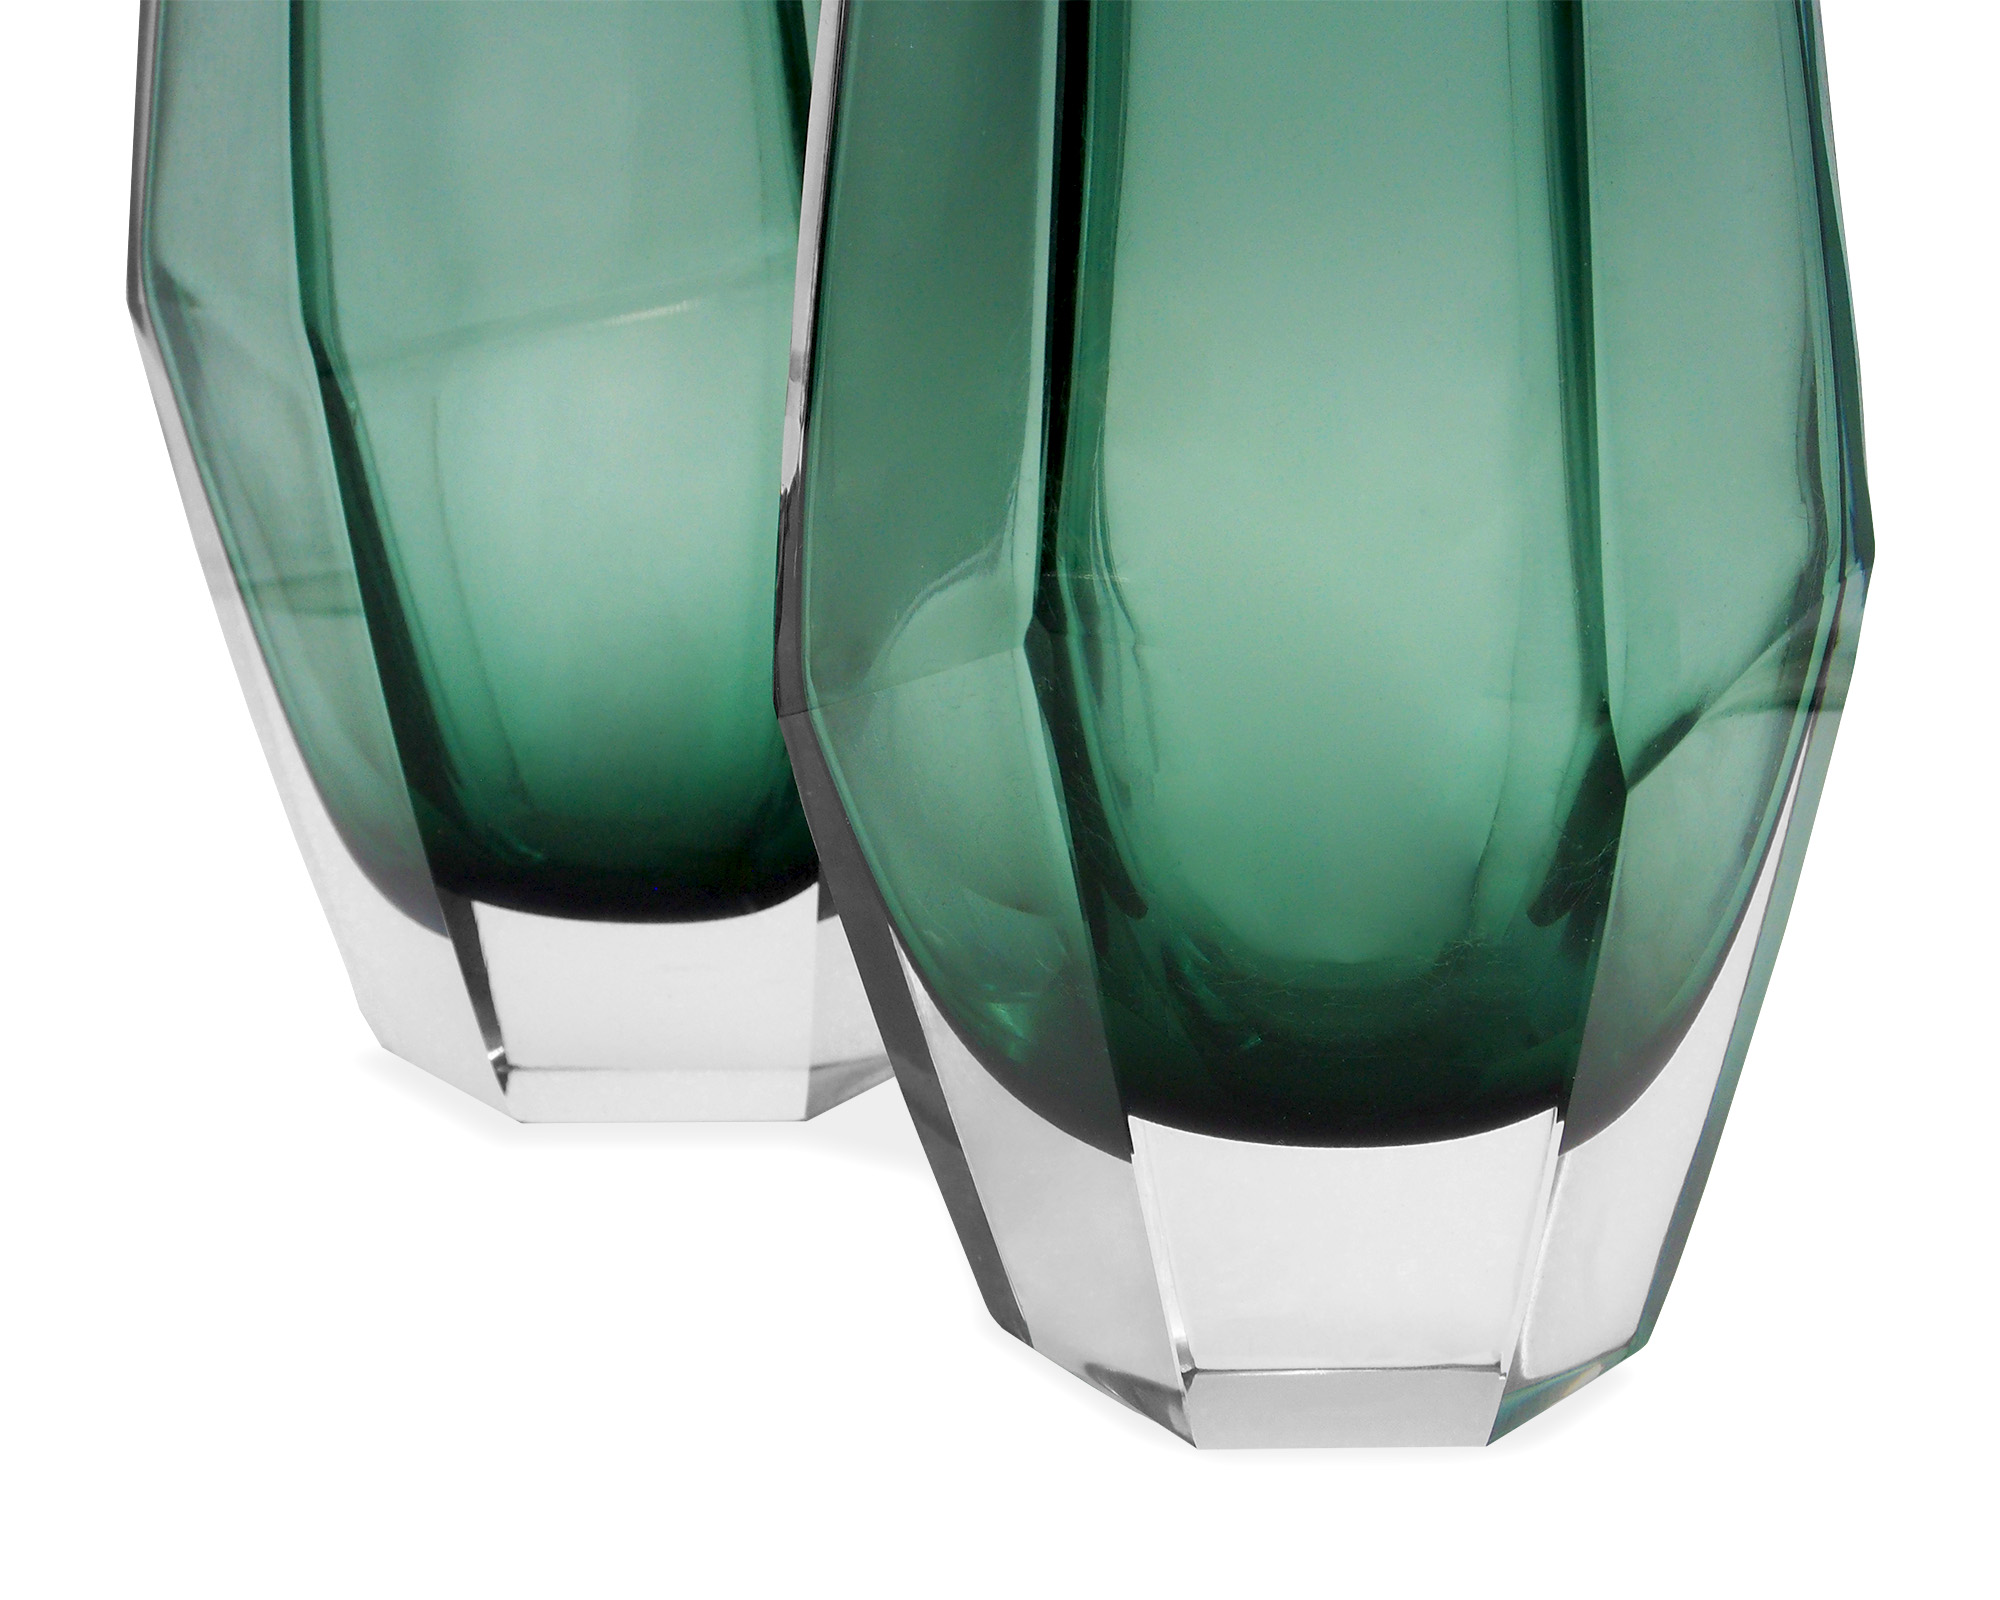 LE019-VS-047_LE019-VS-048_L&E_Wiley Glass Vase Green_Small_Large_2000 x 1600_2